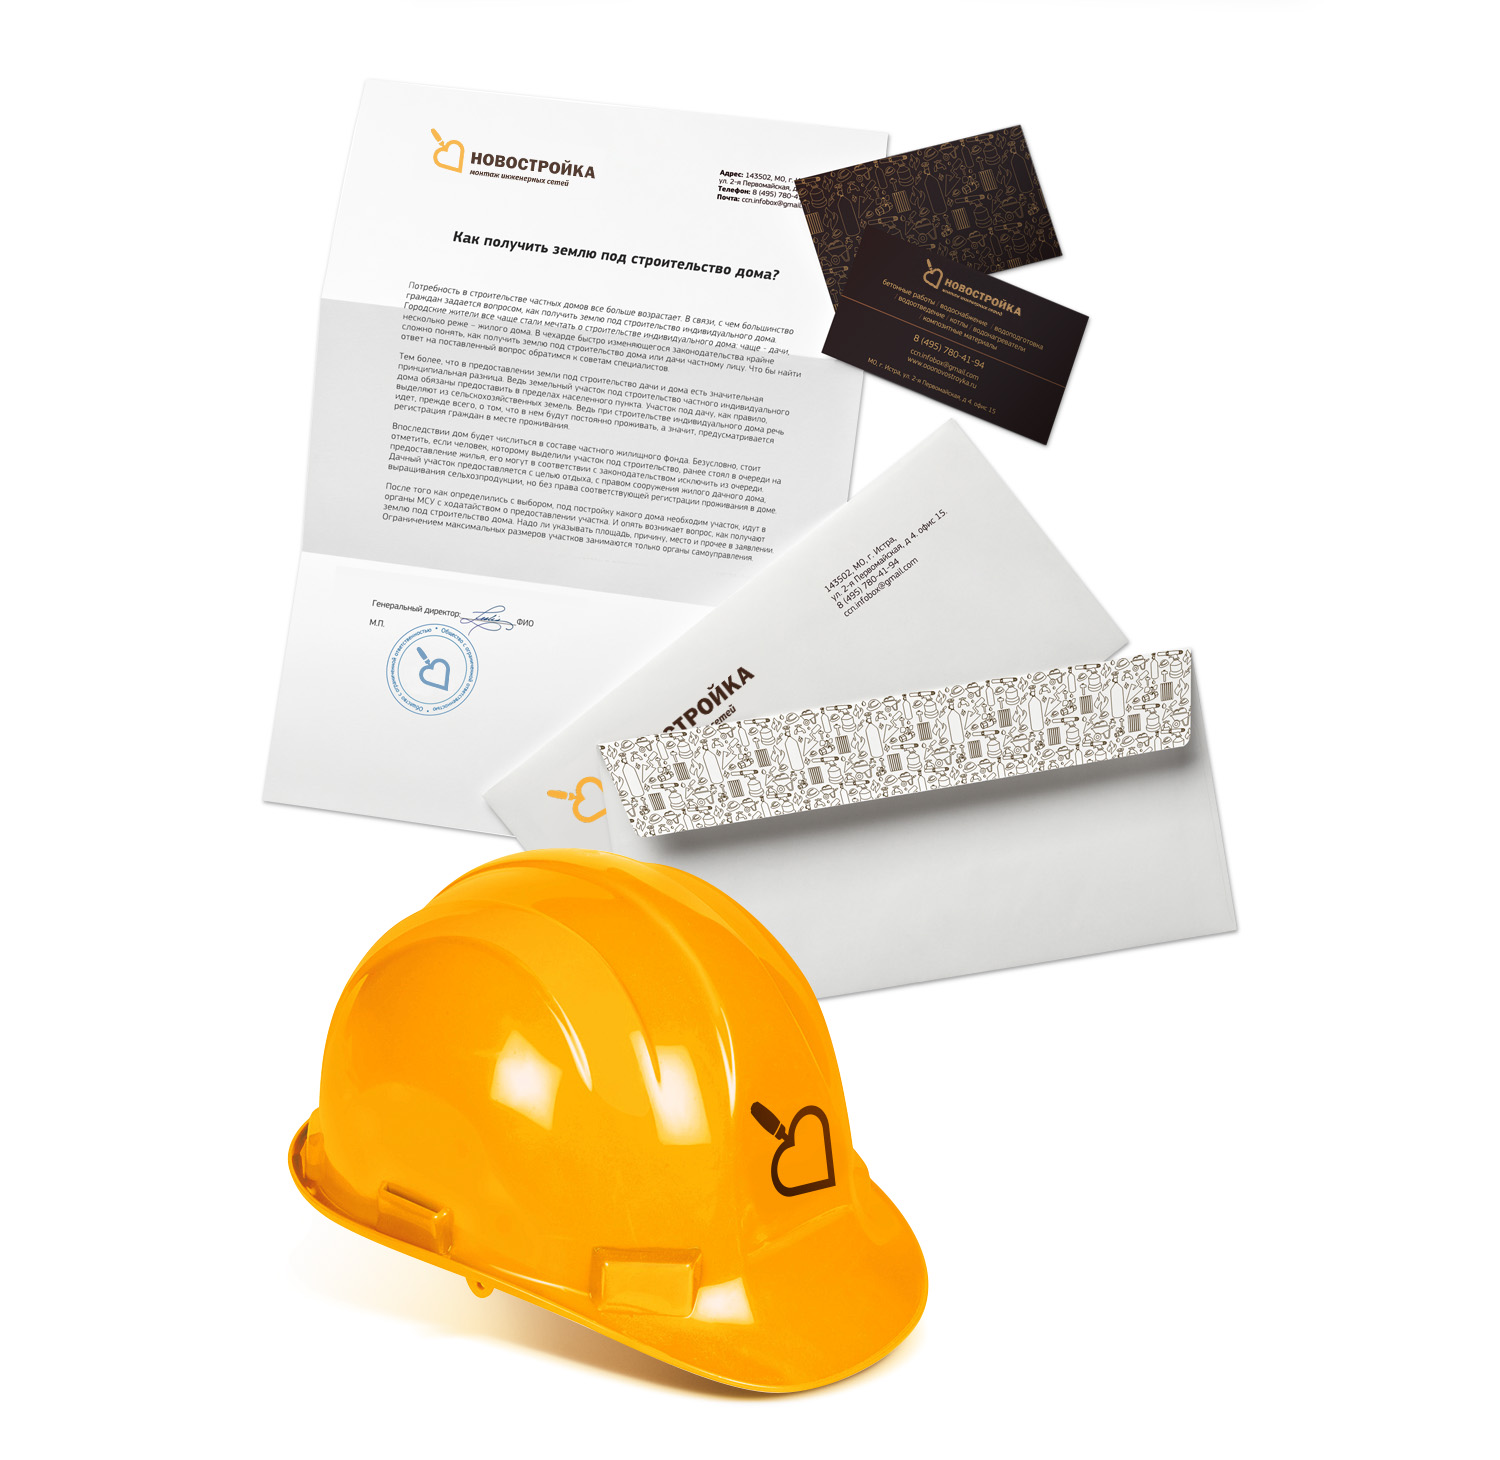 Универсальный фирменный бланк, конверт, визитки и строительная каска